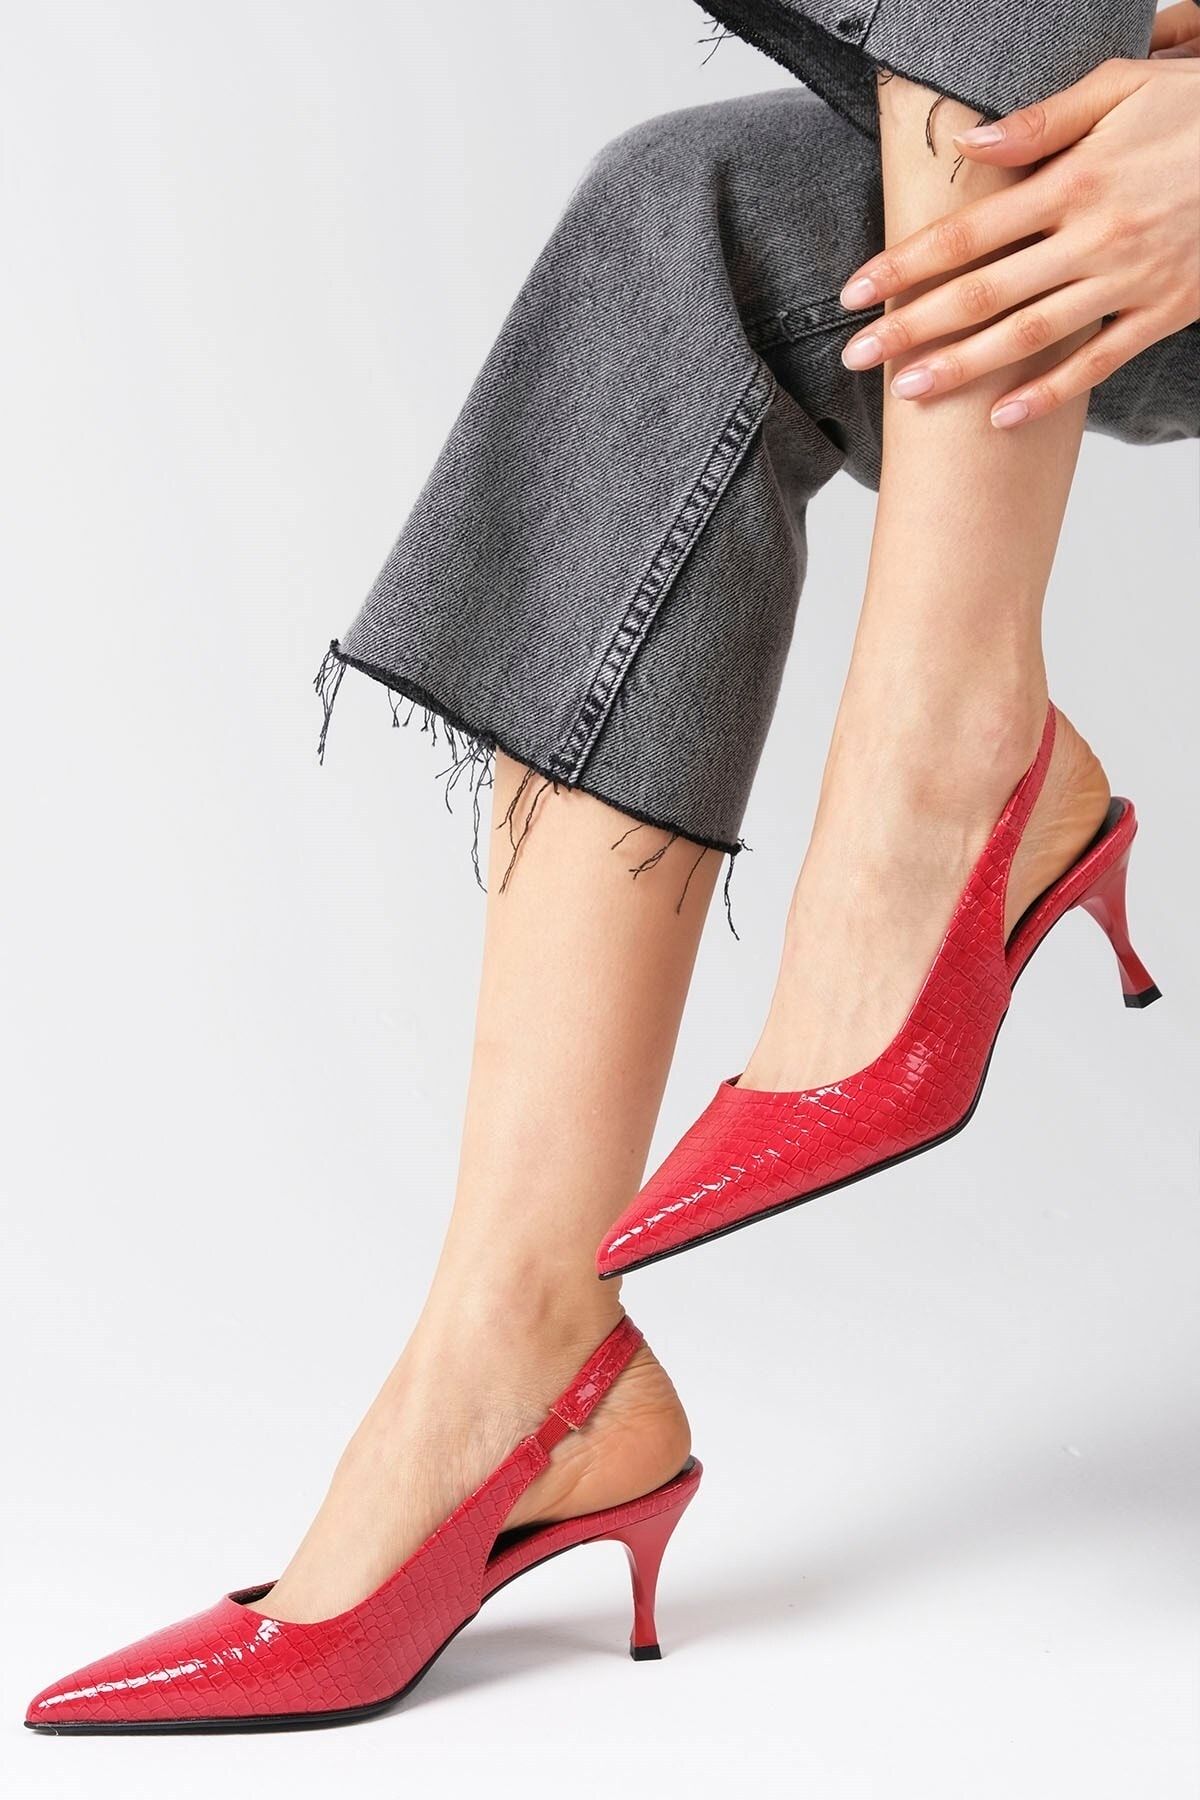 Mio Gusto Rochelle Kırmızı Renk Yılan Desenli Arkası Açık Kadın Topuklu Ayakkabı